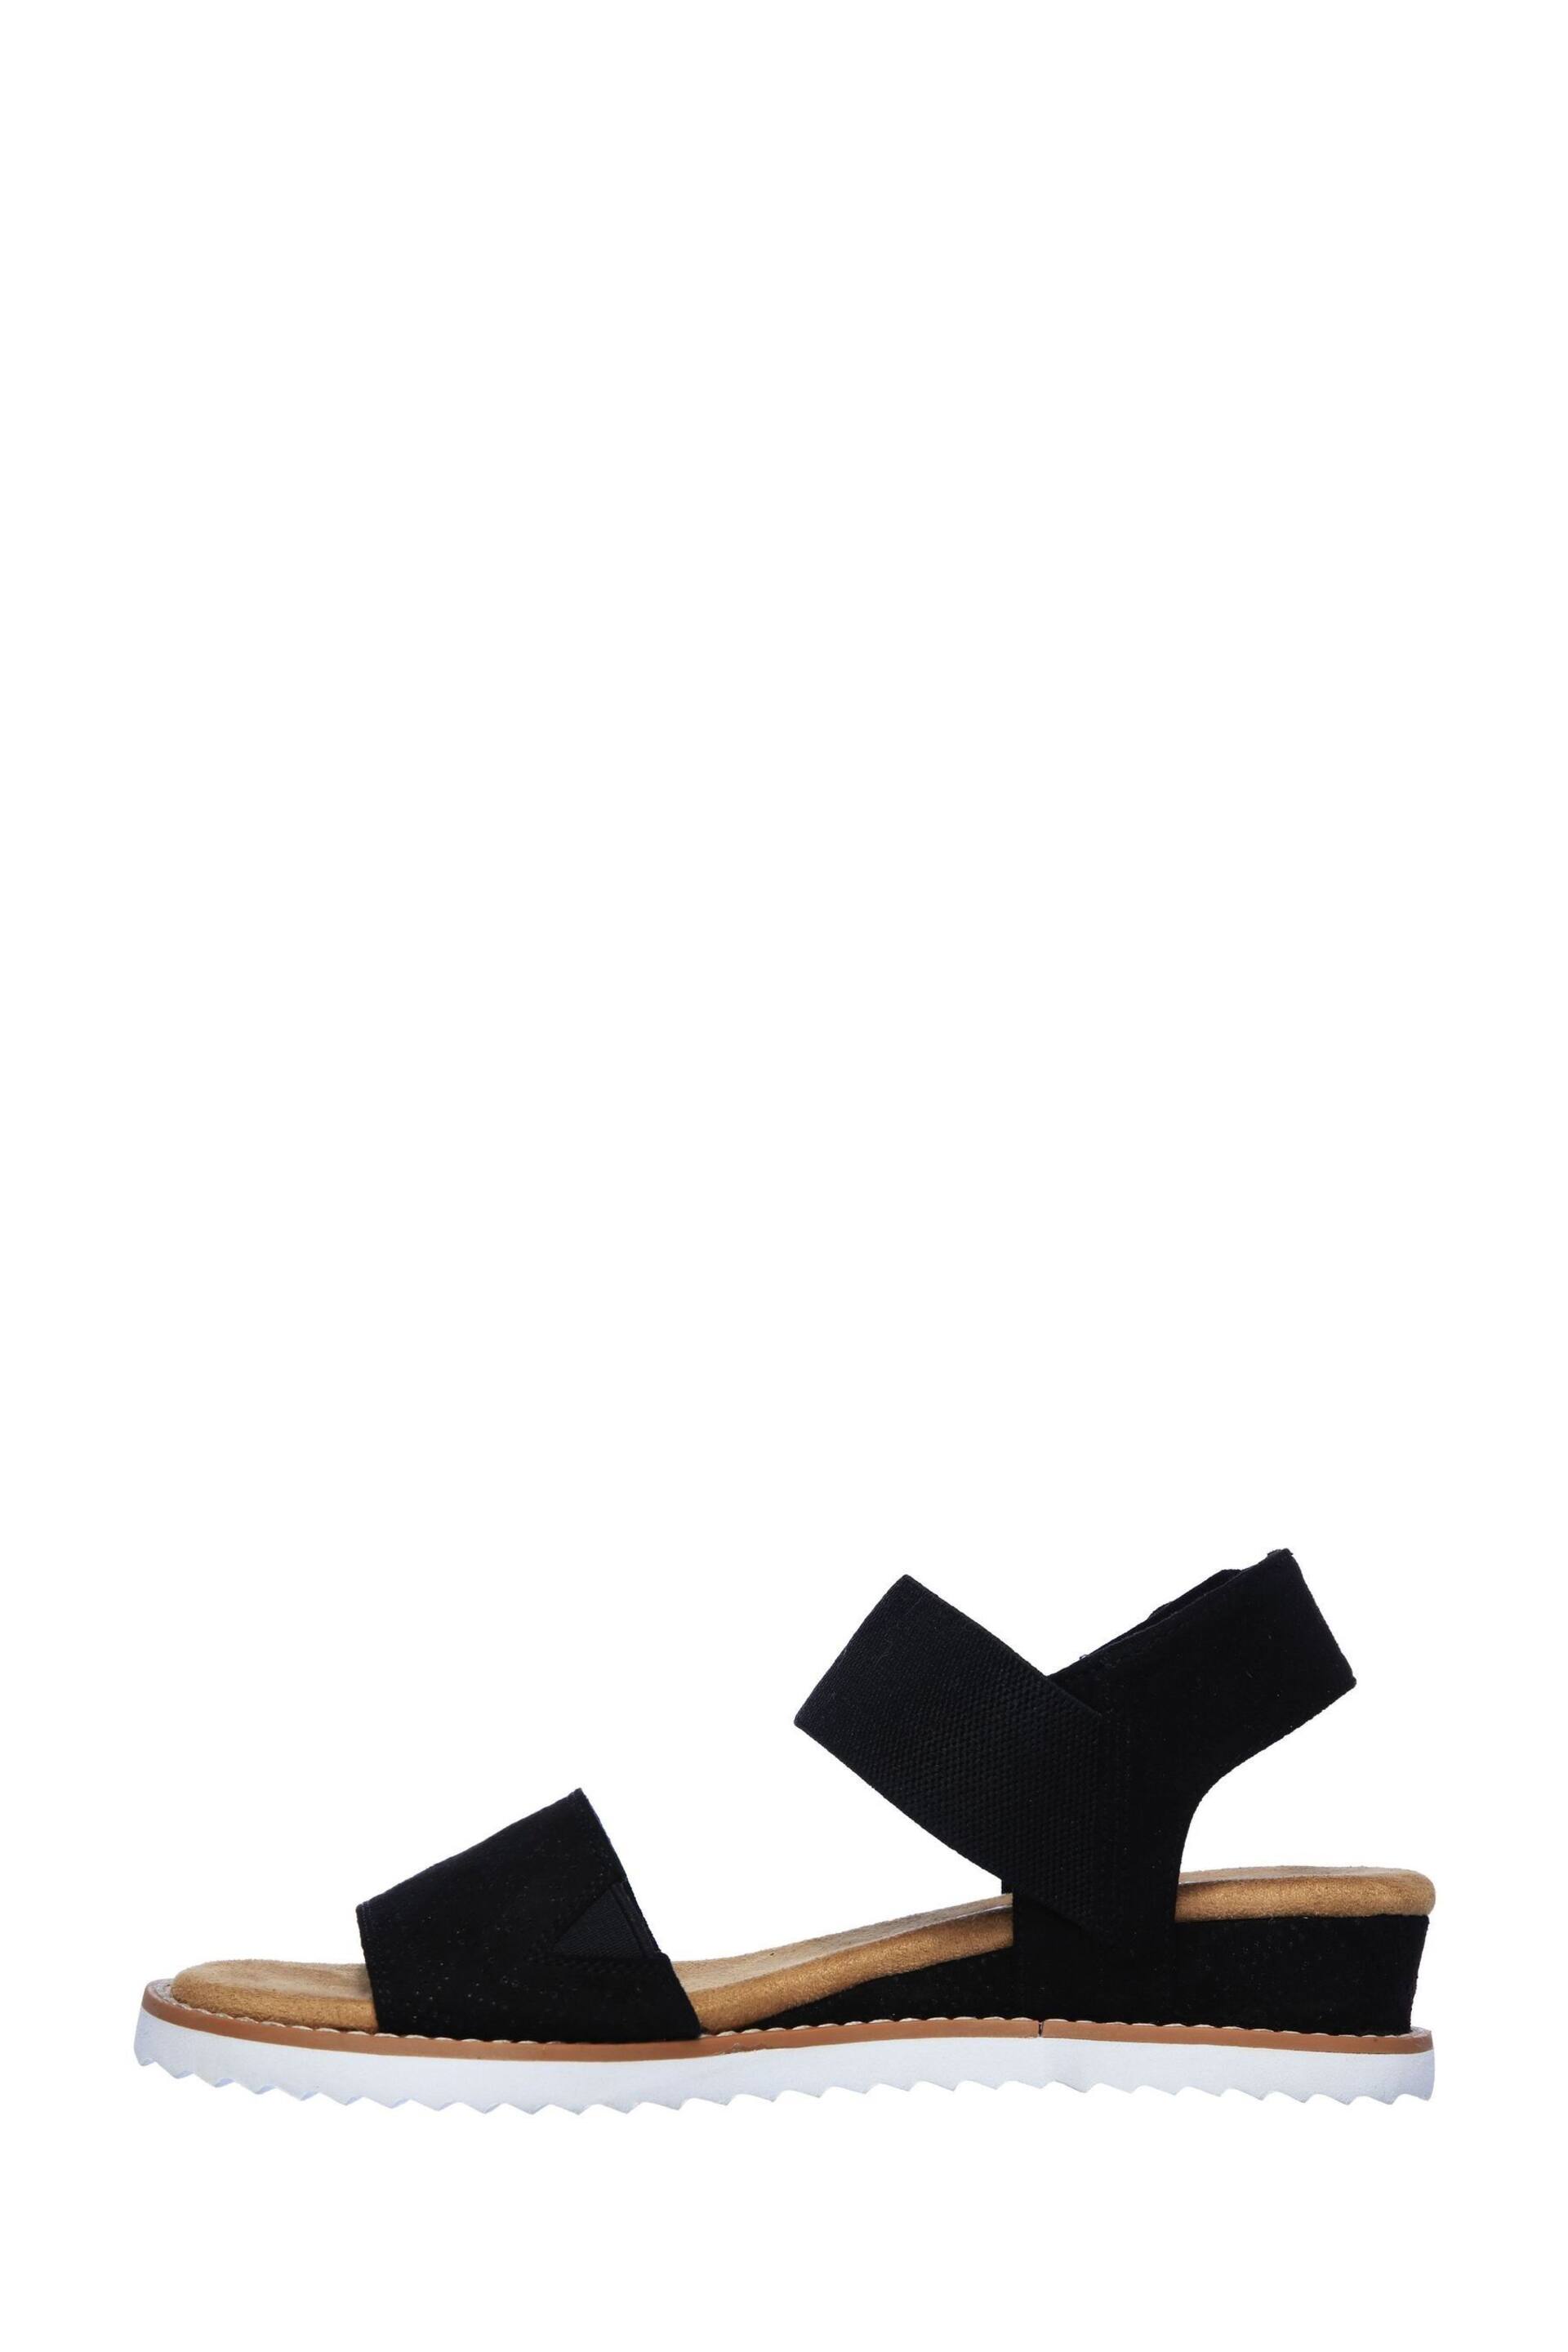 Skechers Black Desert Kiss Sandals - Image 2 of 5